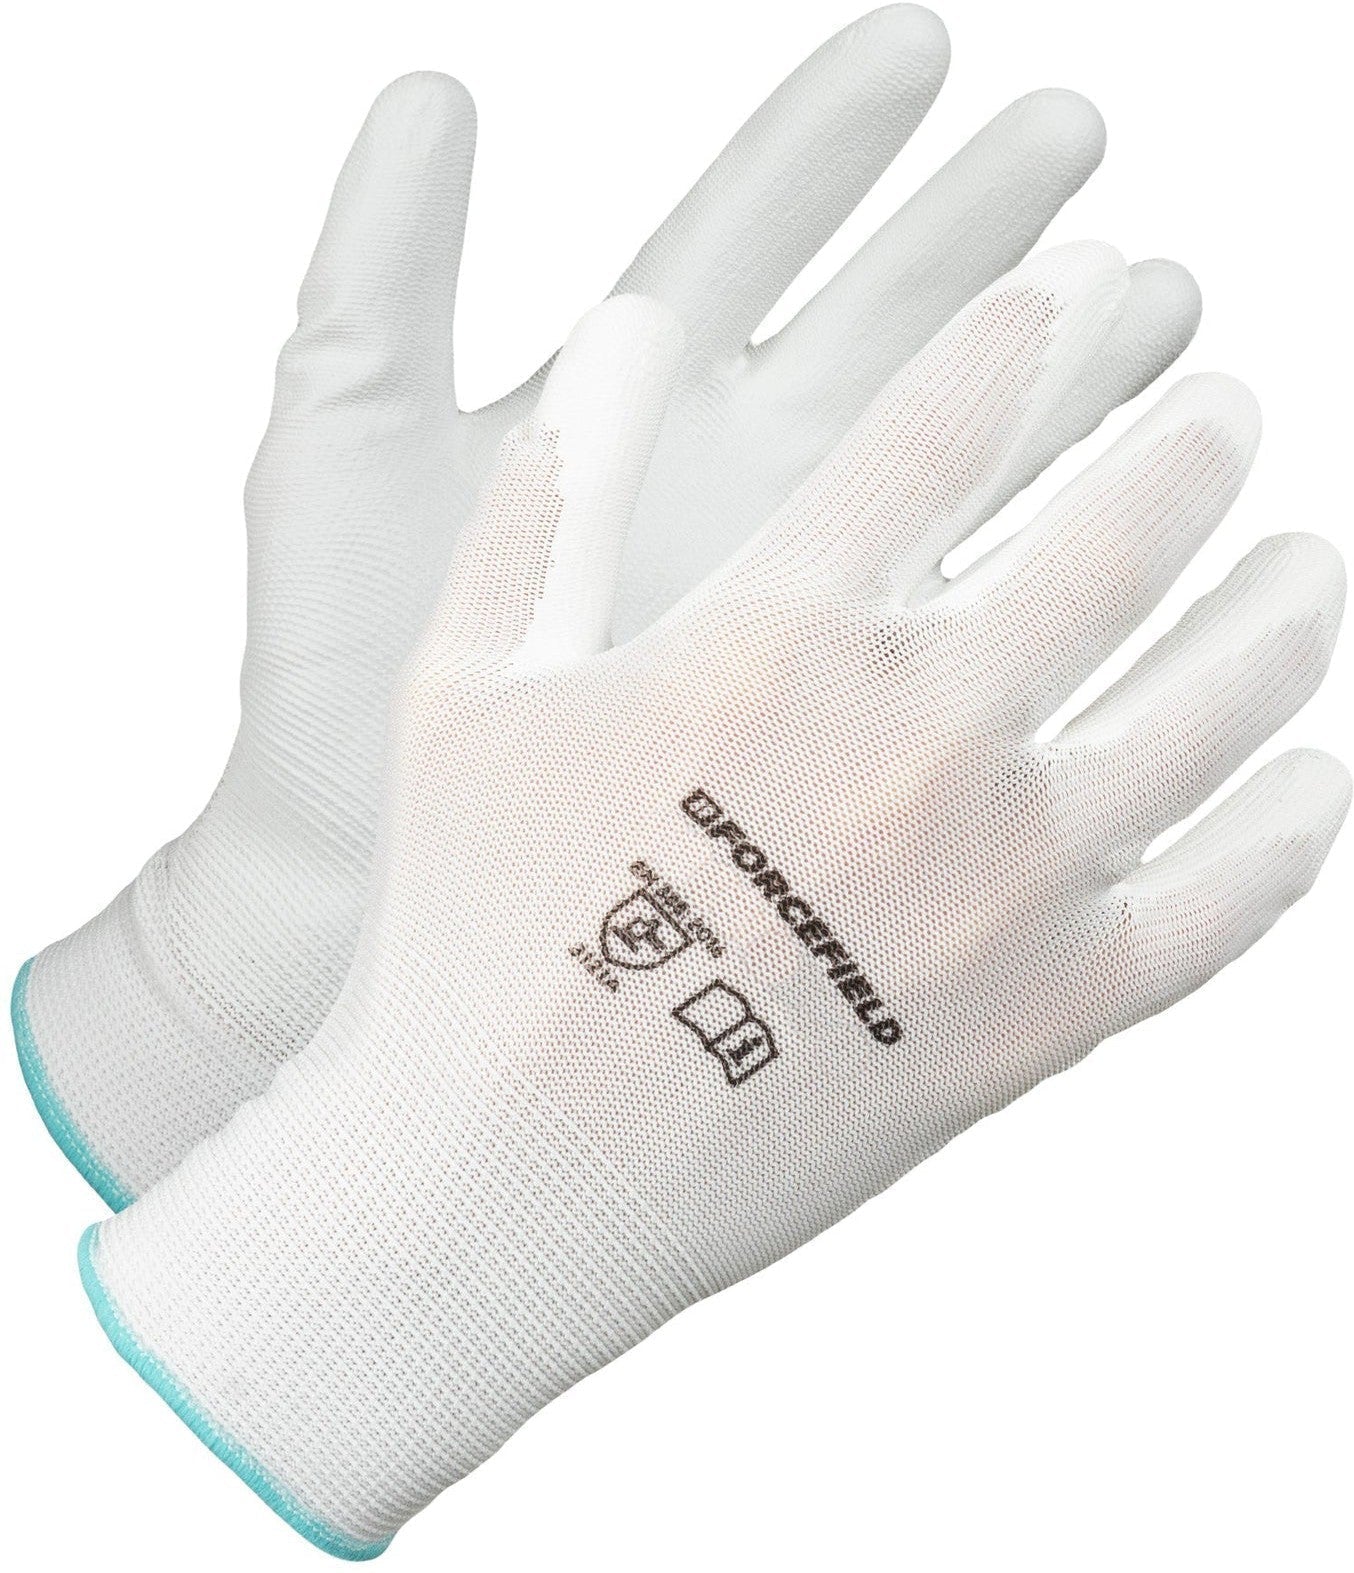 Forcefield - Large White Nylon Polyurethane Palm Coated Glove - 004-134-09-WHT